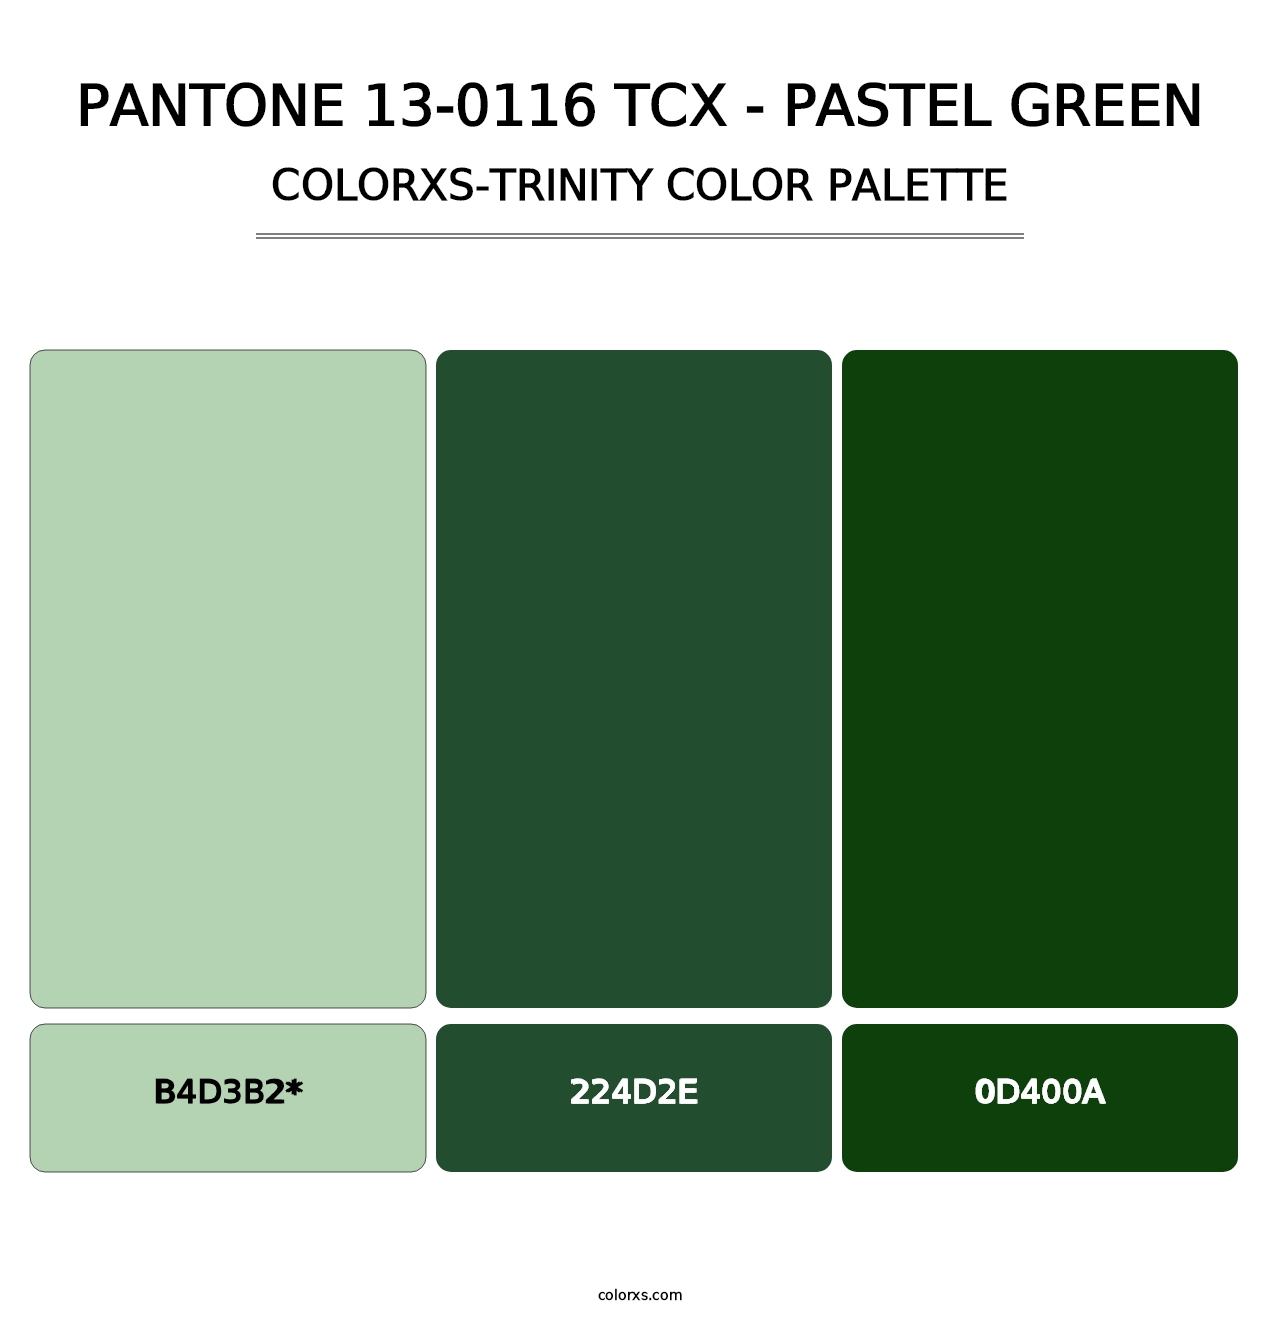 PANTONE 13-0116 TCX - Pastel Green - Colorxs Trinity Palette